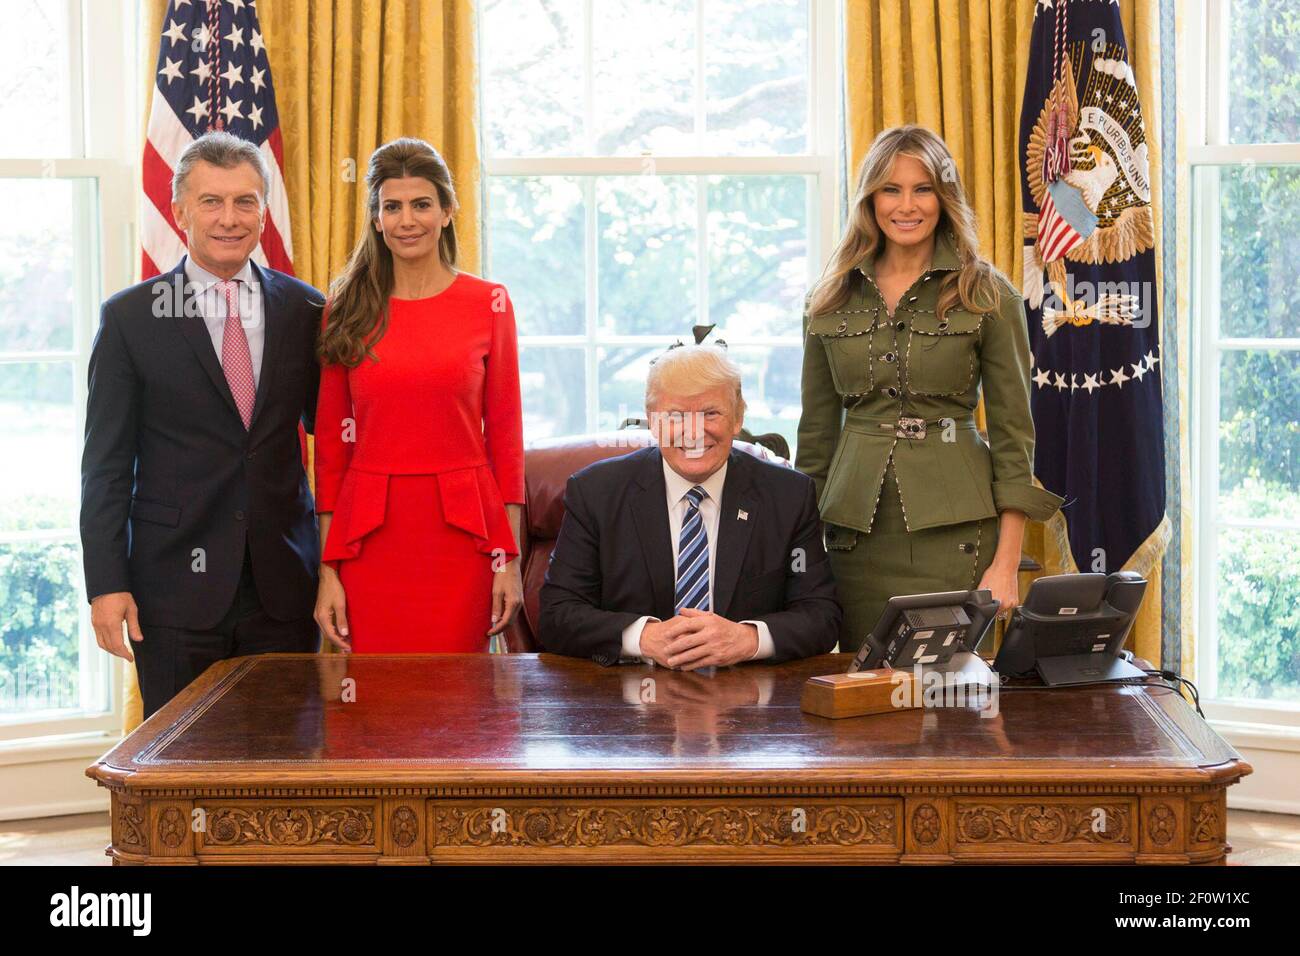 El presidente Donald Trump y la primera dama Melania Trump posan para fotos el jueves 27 2017 de abril con el presidente argentino Mauricio Macri y su esposa Juliana Awada en la Oficina Oval de la Casa Blanca en Washington D.C. Foto de stock